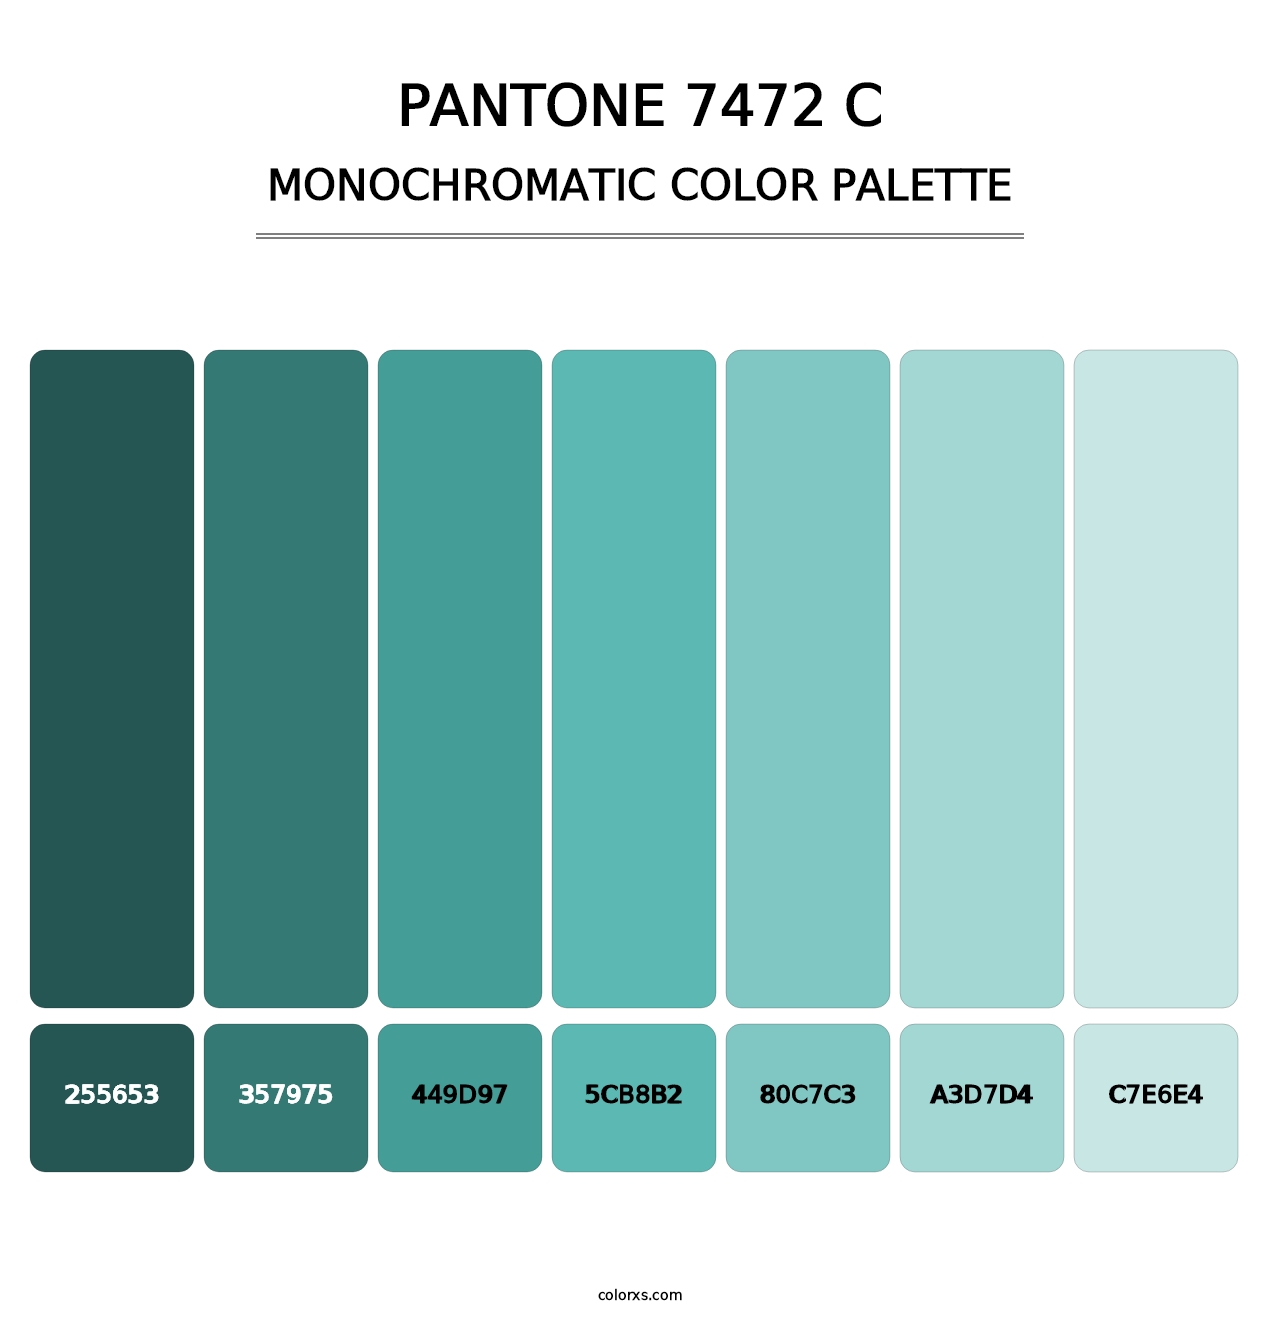 PANTONE 7472 C - Monochromatic Color Palette